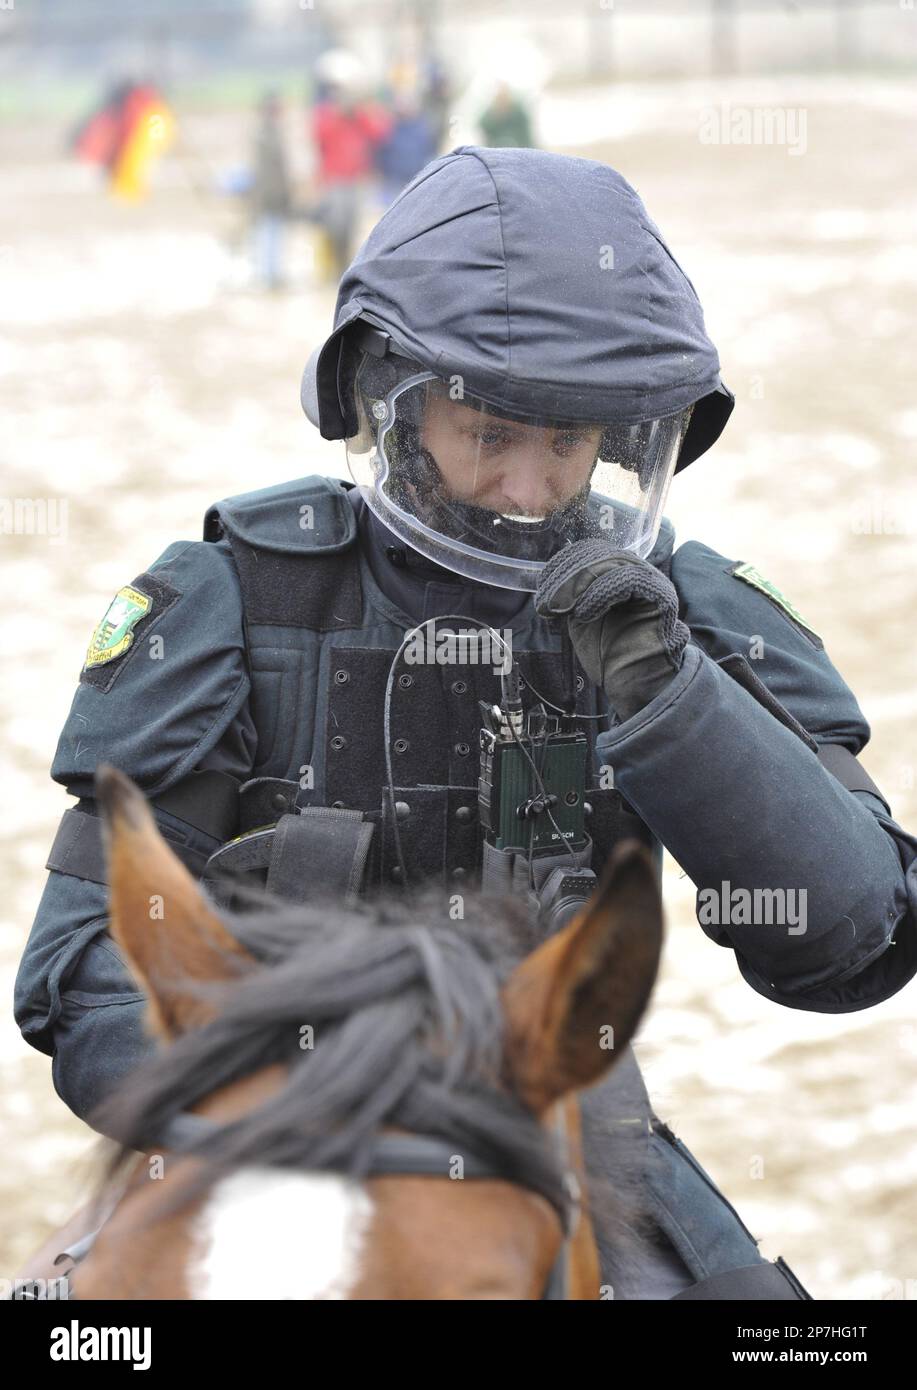 Polizisten der Reiterstaffel der saechsischen Polizei proben am Montag, 12.  April 2010, in Grosserkmannsdorf, Sachsen, auf einem Uebungsgelaende. Die  saechsische Polizeireiterstaffel besteht aus 26 Beamten und 14  Dienstpferden. Im Jahr 2009 hatten